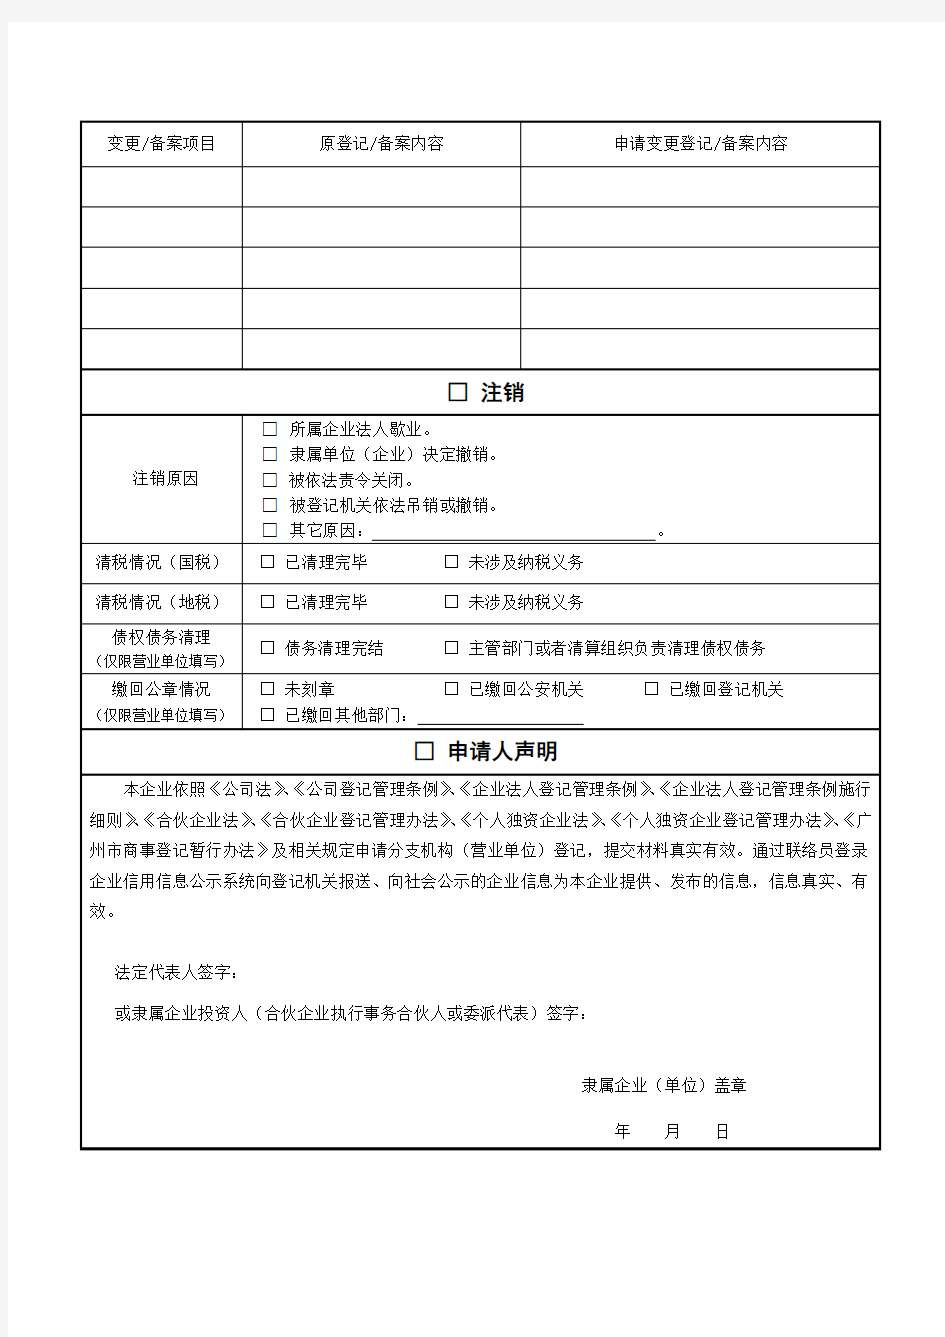 广州工商登记业务规范性文书-8内资企业分支机构、营业单位登记(备案)申请书讲解